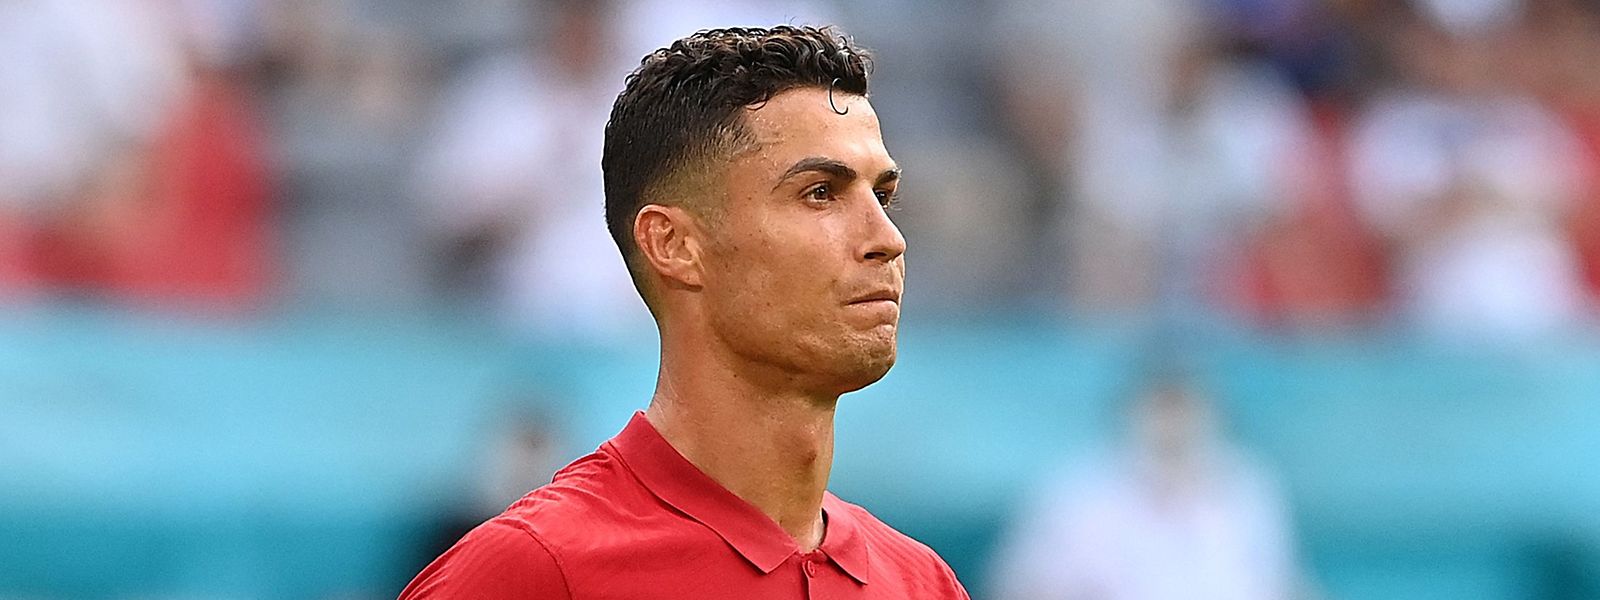 Cristiano Ronaldo ist offenbar mehr als unzufrieden mit der Berichterstattung über ihn – nur fünf der letzten 100 Nachrichten seien wahr.